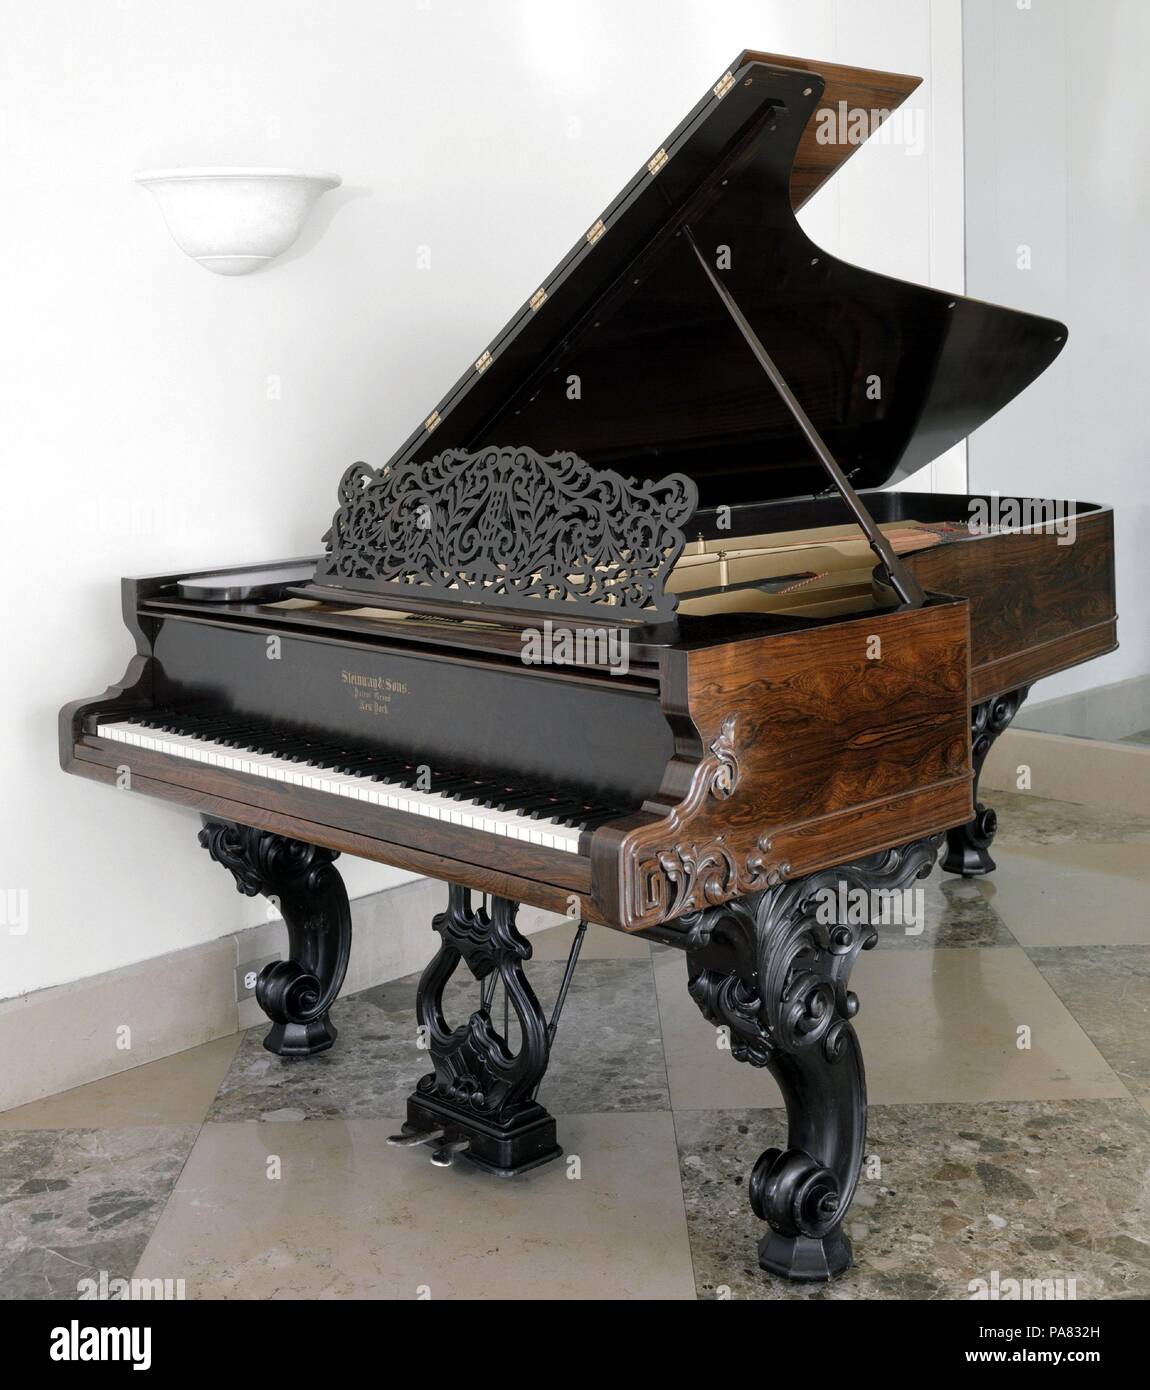 Al pianoforte a coda. Cultura: American. Dimensioni: profondità: 61 5/8 in.  (156,5 cm). Autore: Steinway & Sons. Data: 1868. Il pianoforte era  conosciuto come un "Plain Grand Style 2' pianoforte. Il 8